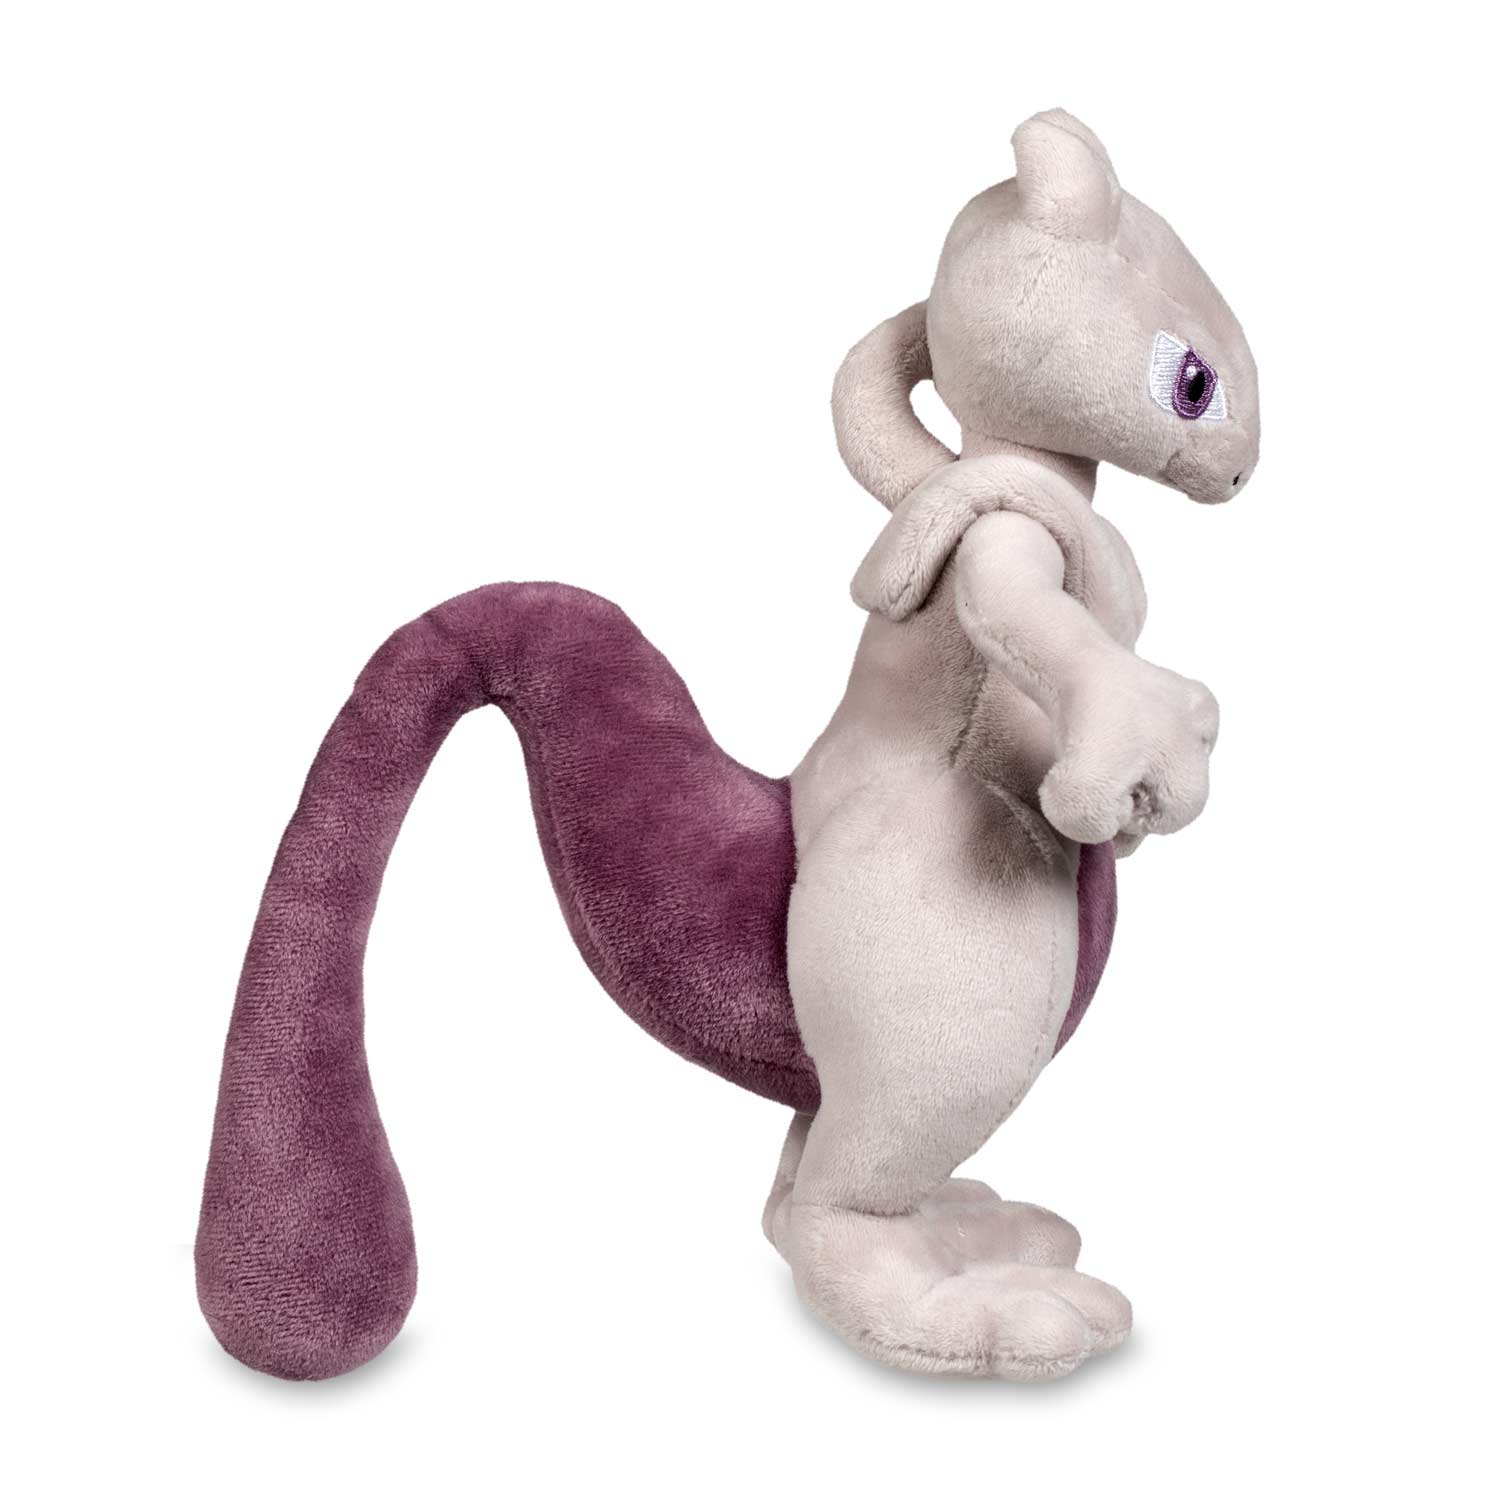 Mewtwo Plush Soft Toy Doll Stuffed Animal Teddy 6" 